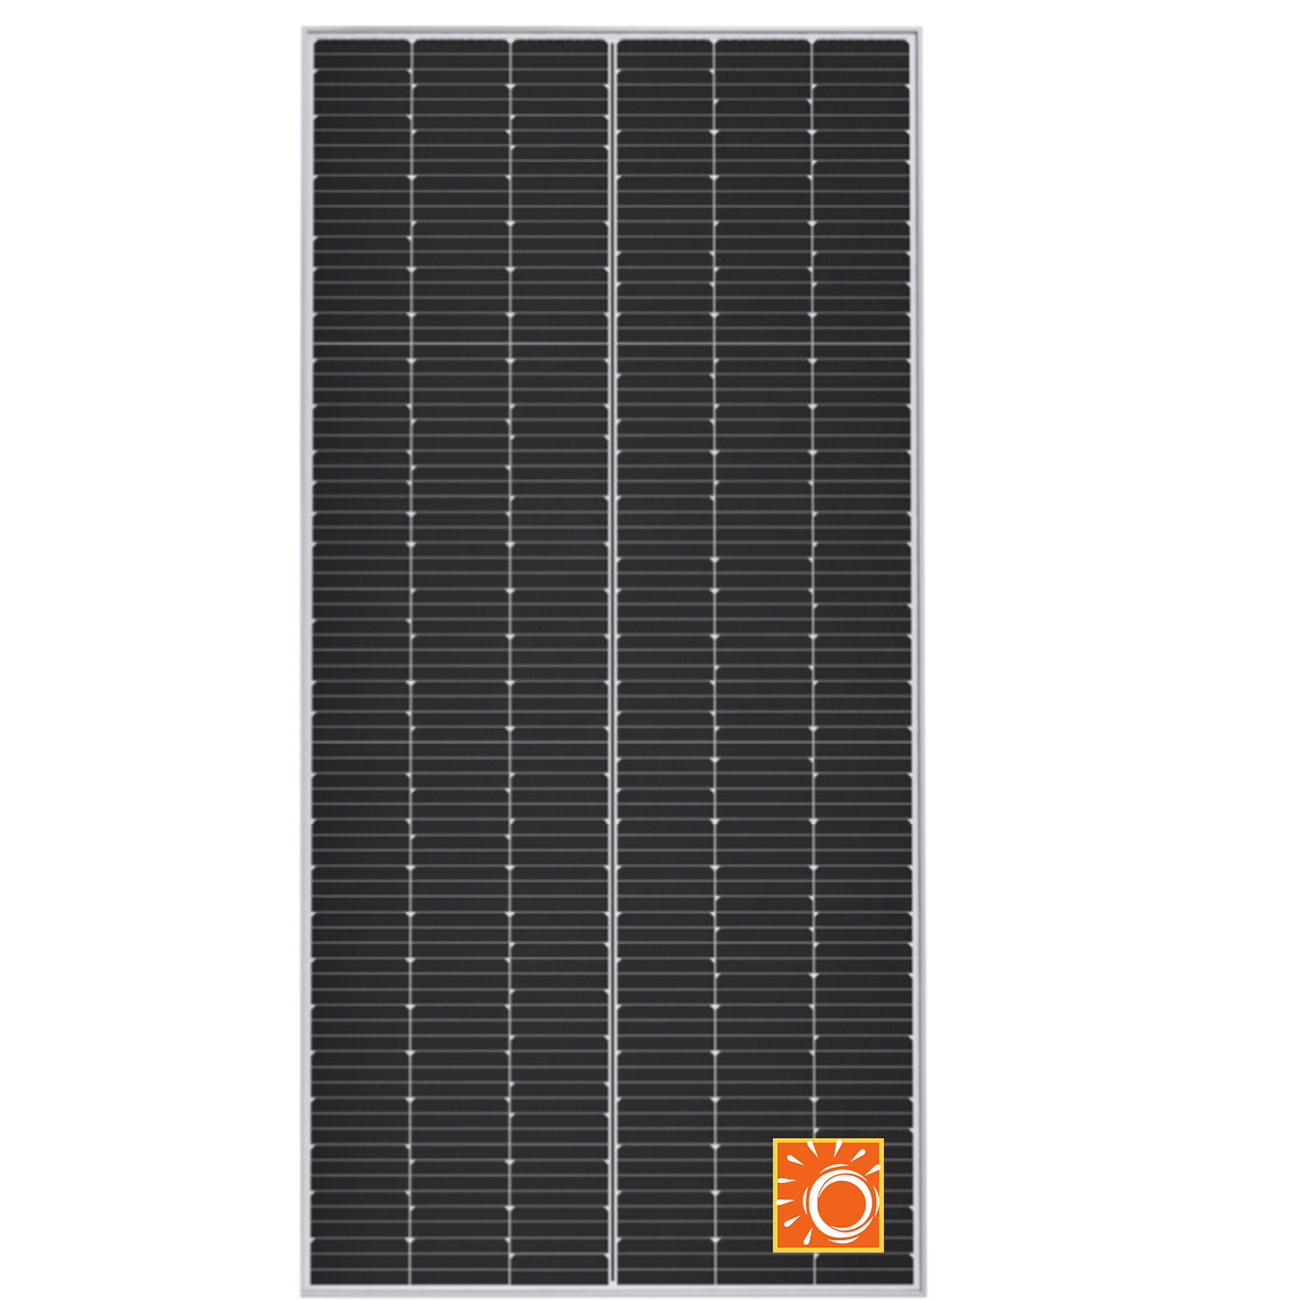 SunPower P19 Solar Panel